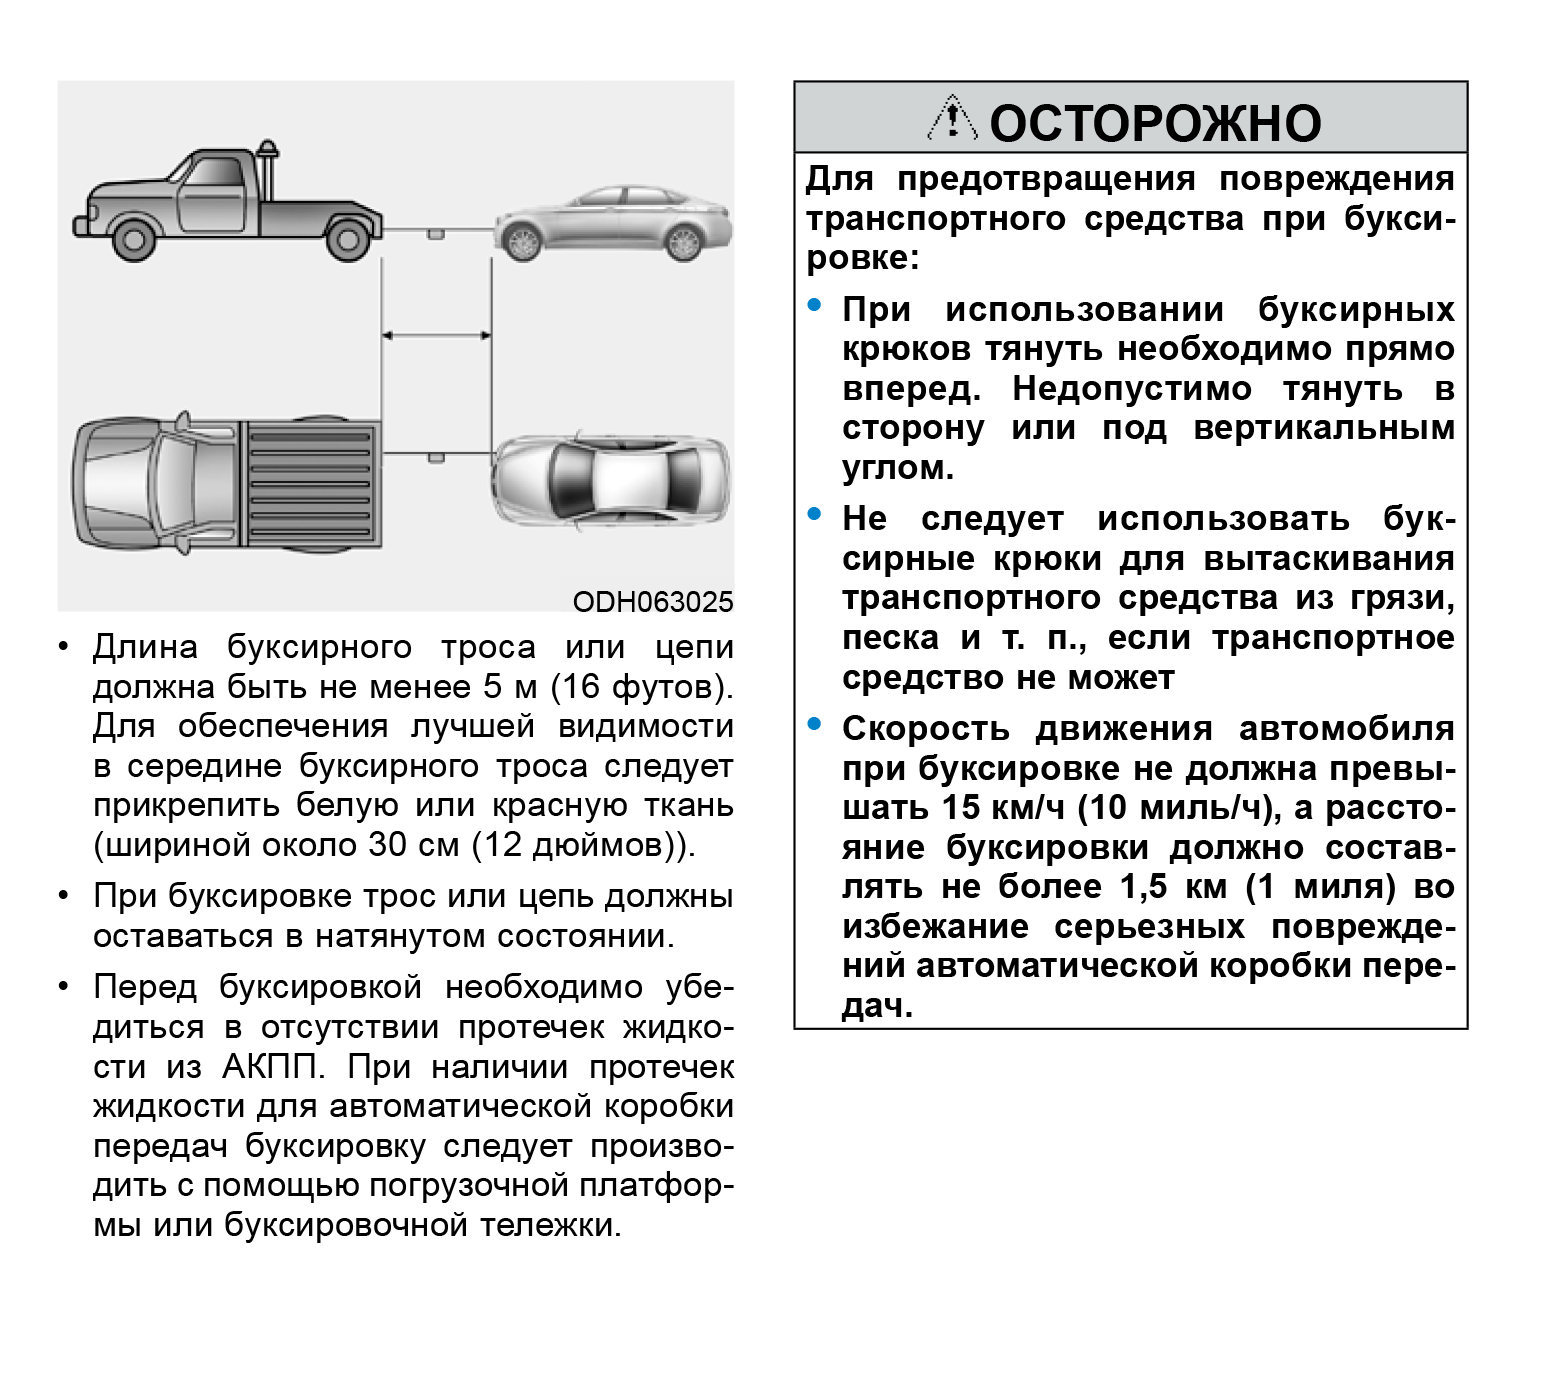 Руководство по эксплуатации автомобиля Хендай Крета. Хендай рекомендует буксировать Крету при скорости 15 км/ч на 1,5 км. Источник: hyundai-creta2.ru